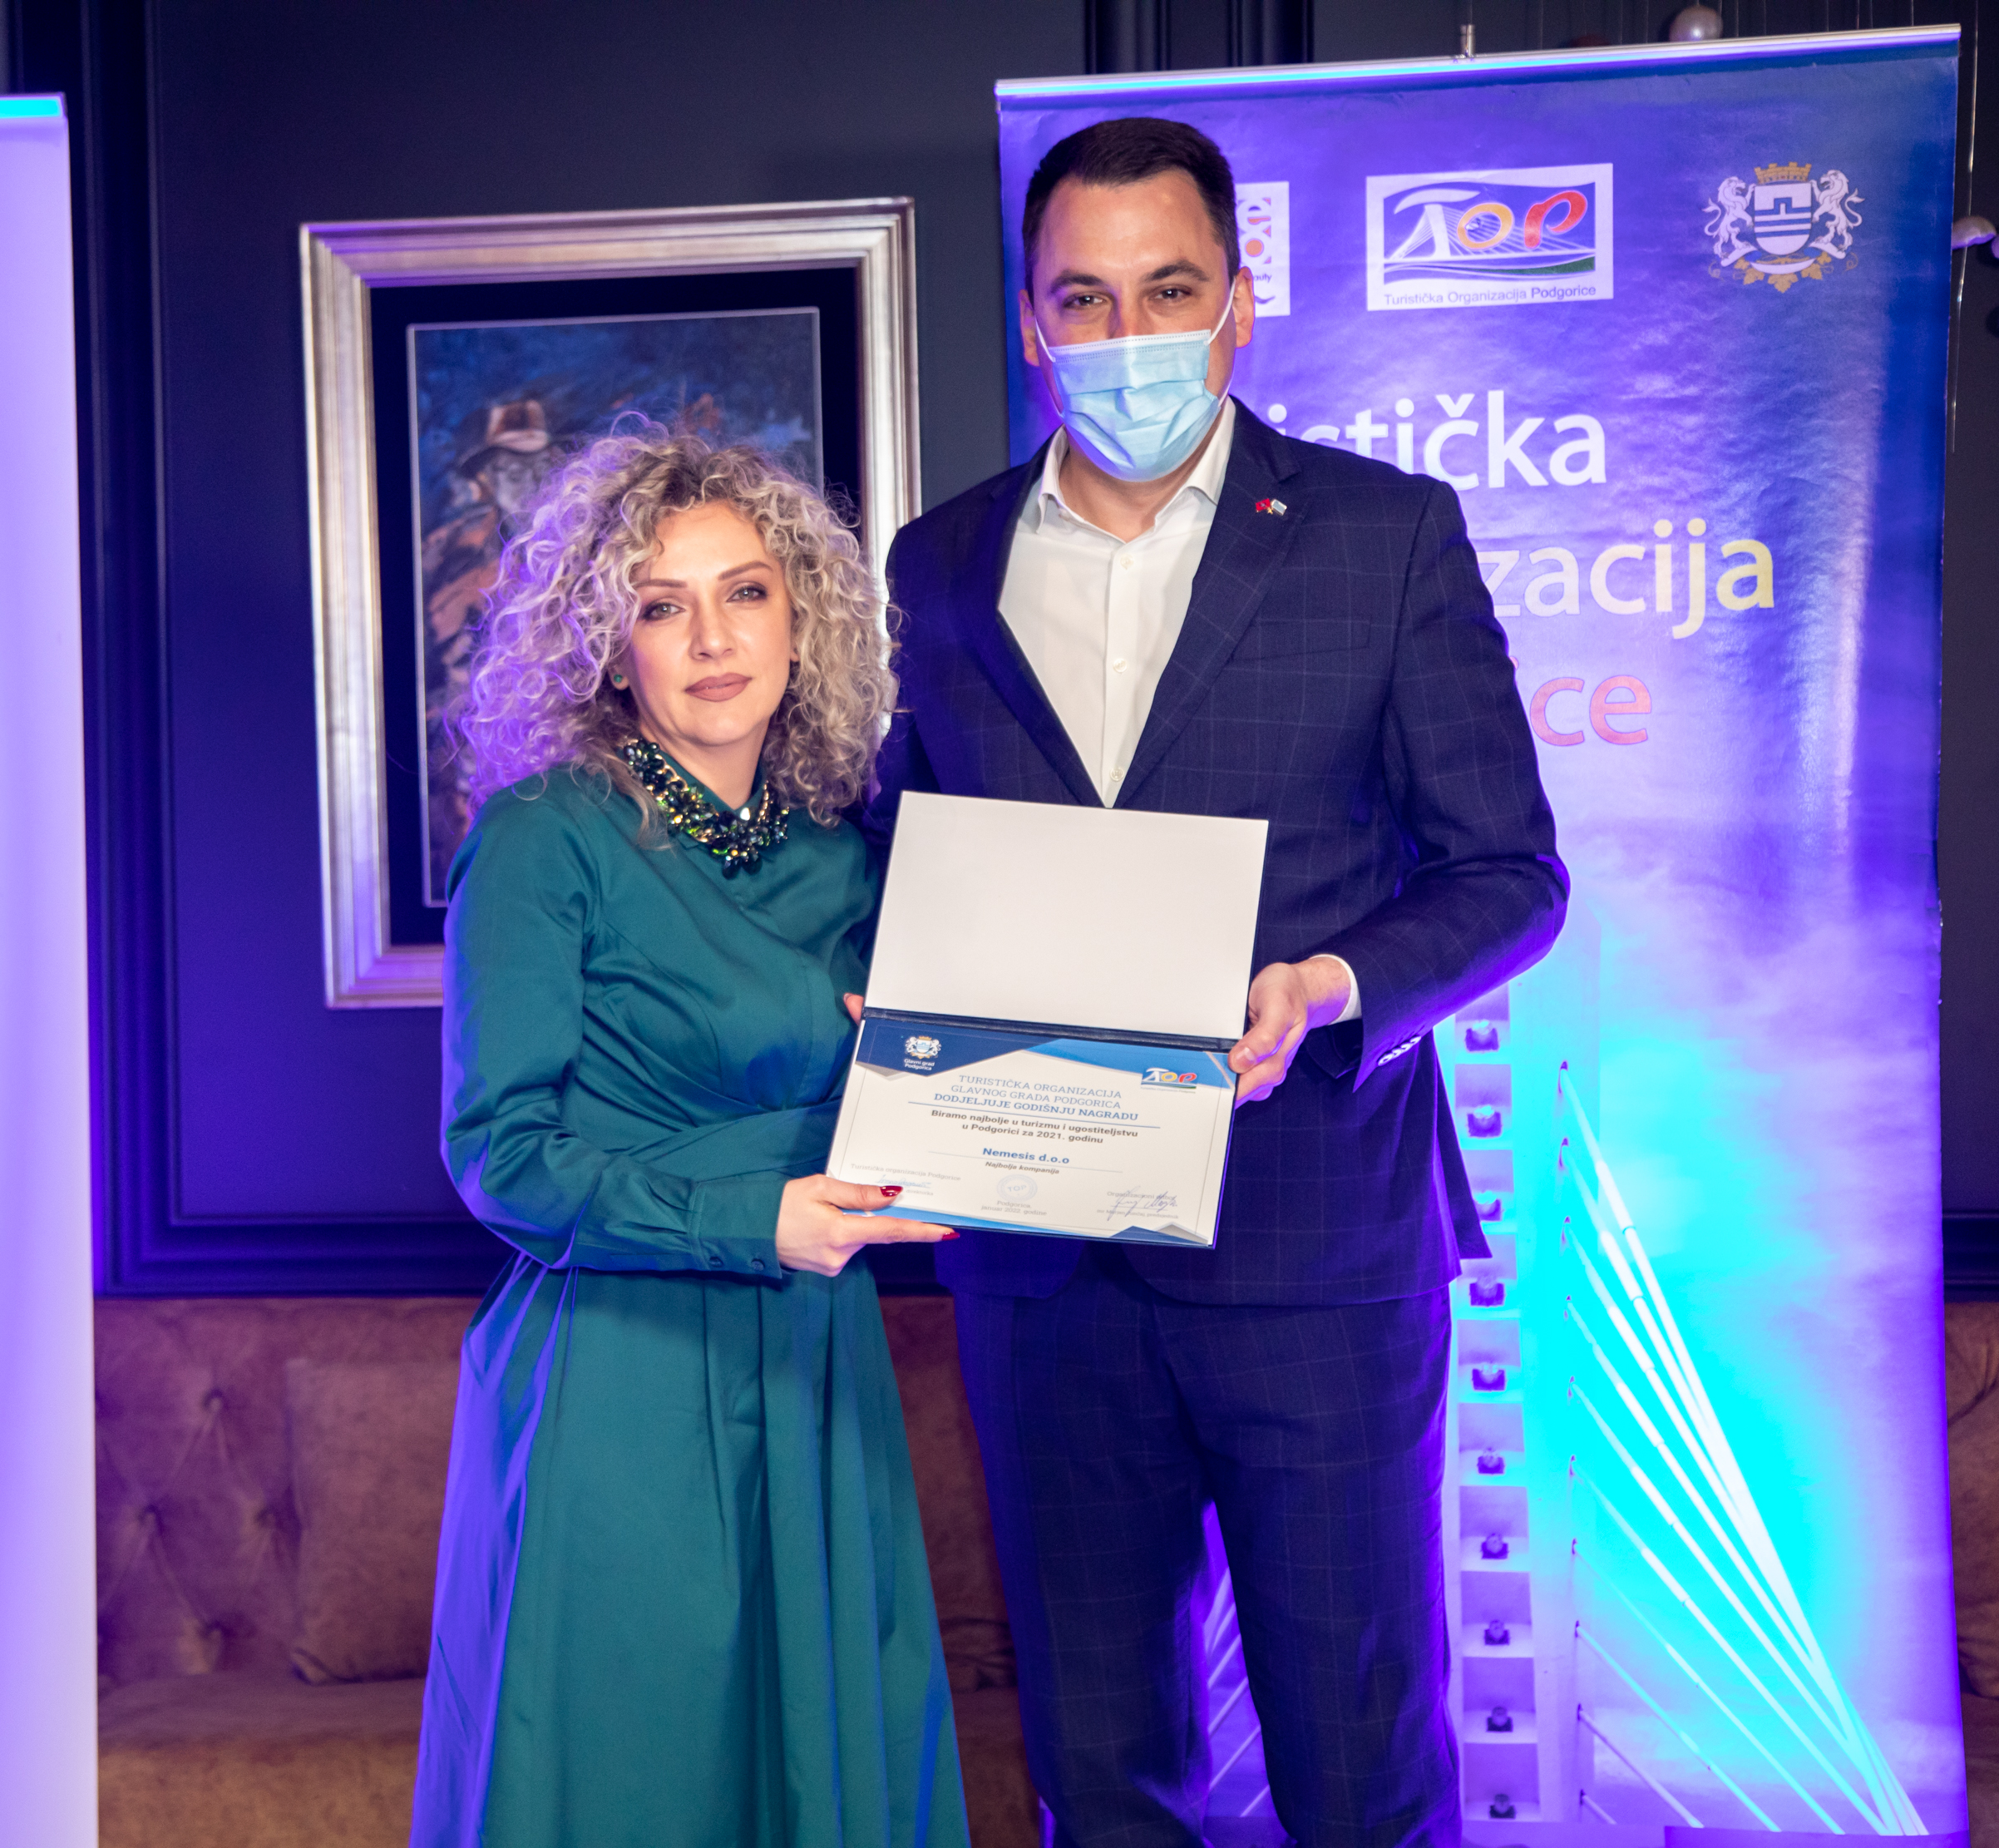 Uručena priznanja najboljim kolektivima i pojedincima u turizmu i ugostiteljstvu Podgorice za 2021. godinu